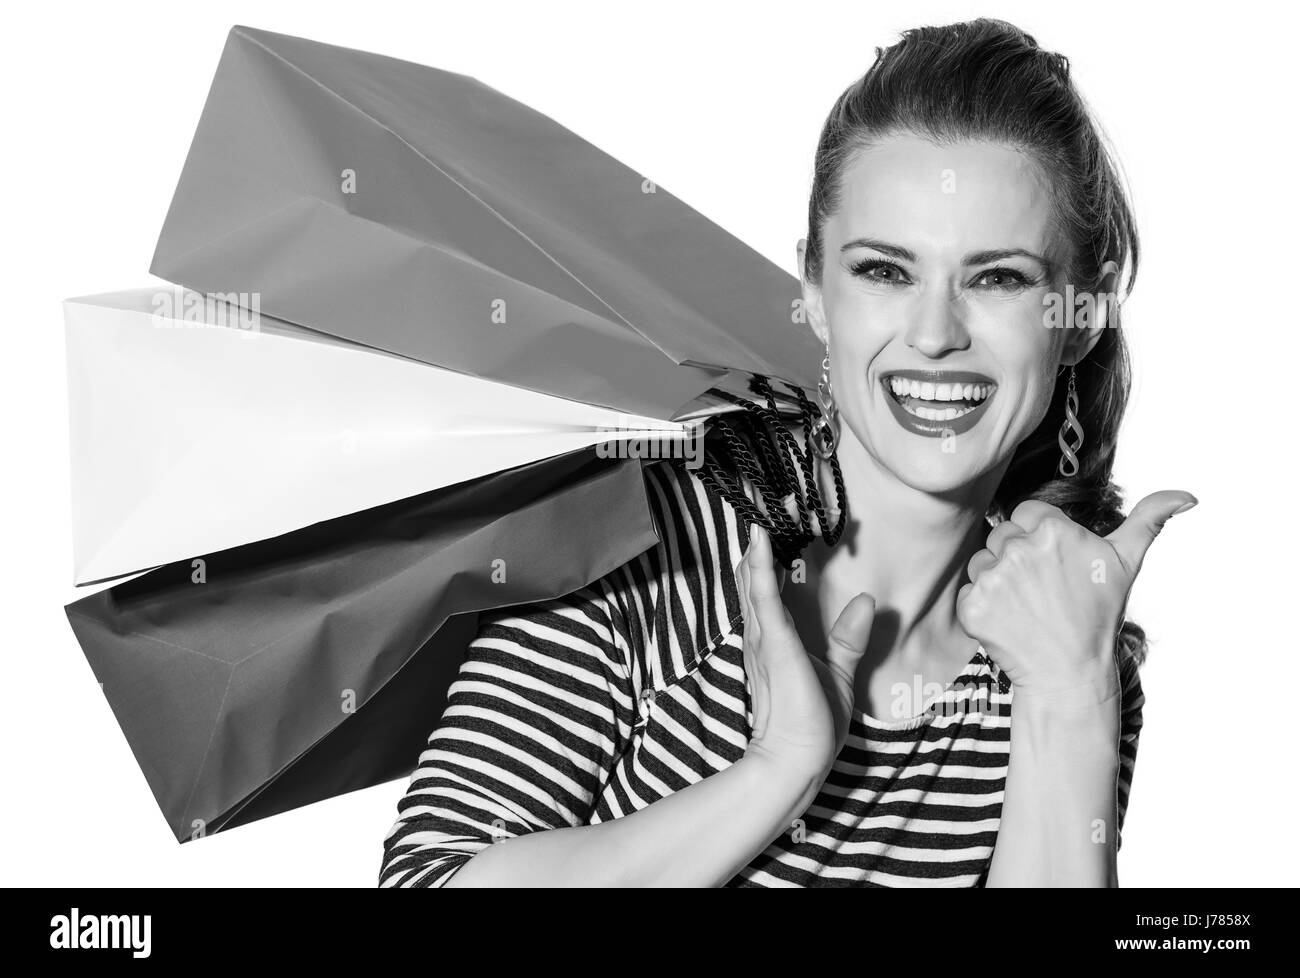 Shopping. Il modo francese. Ritratto di sorridere alla moda-monger con borse della spesa dei colori della bandiera francese isolati su sfondo bianco Foto Stock